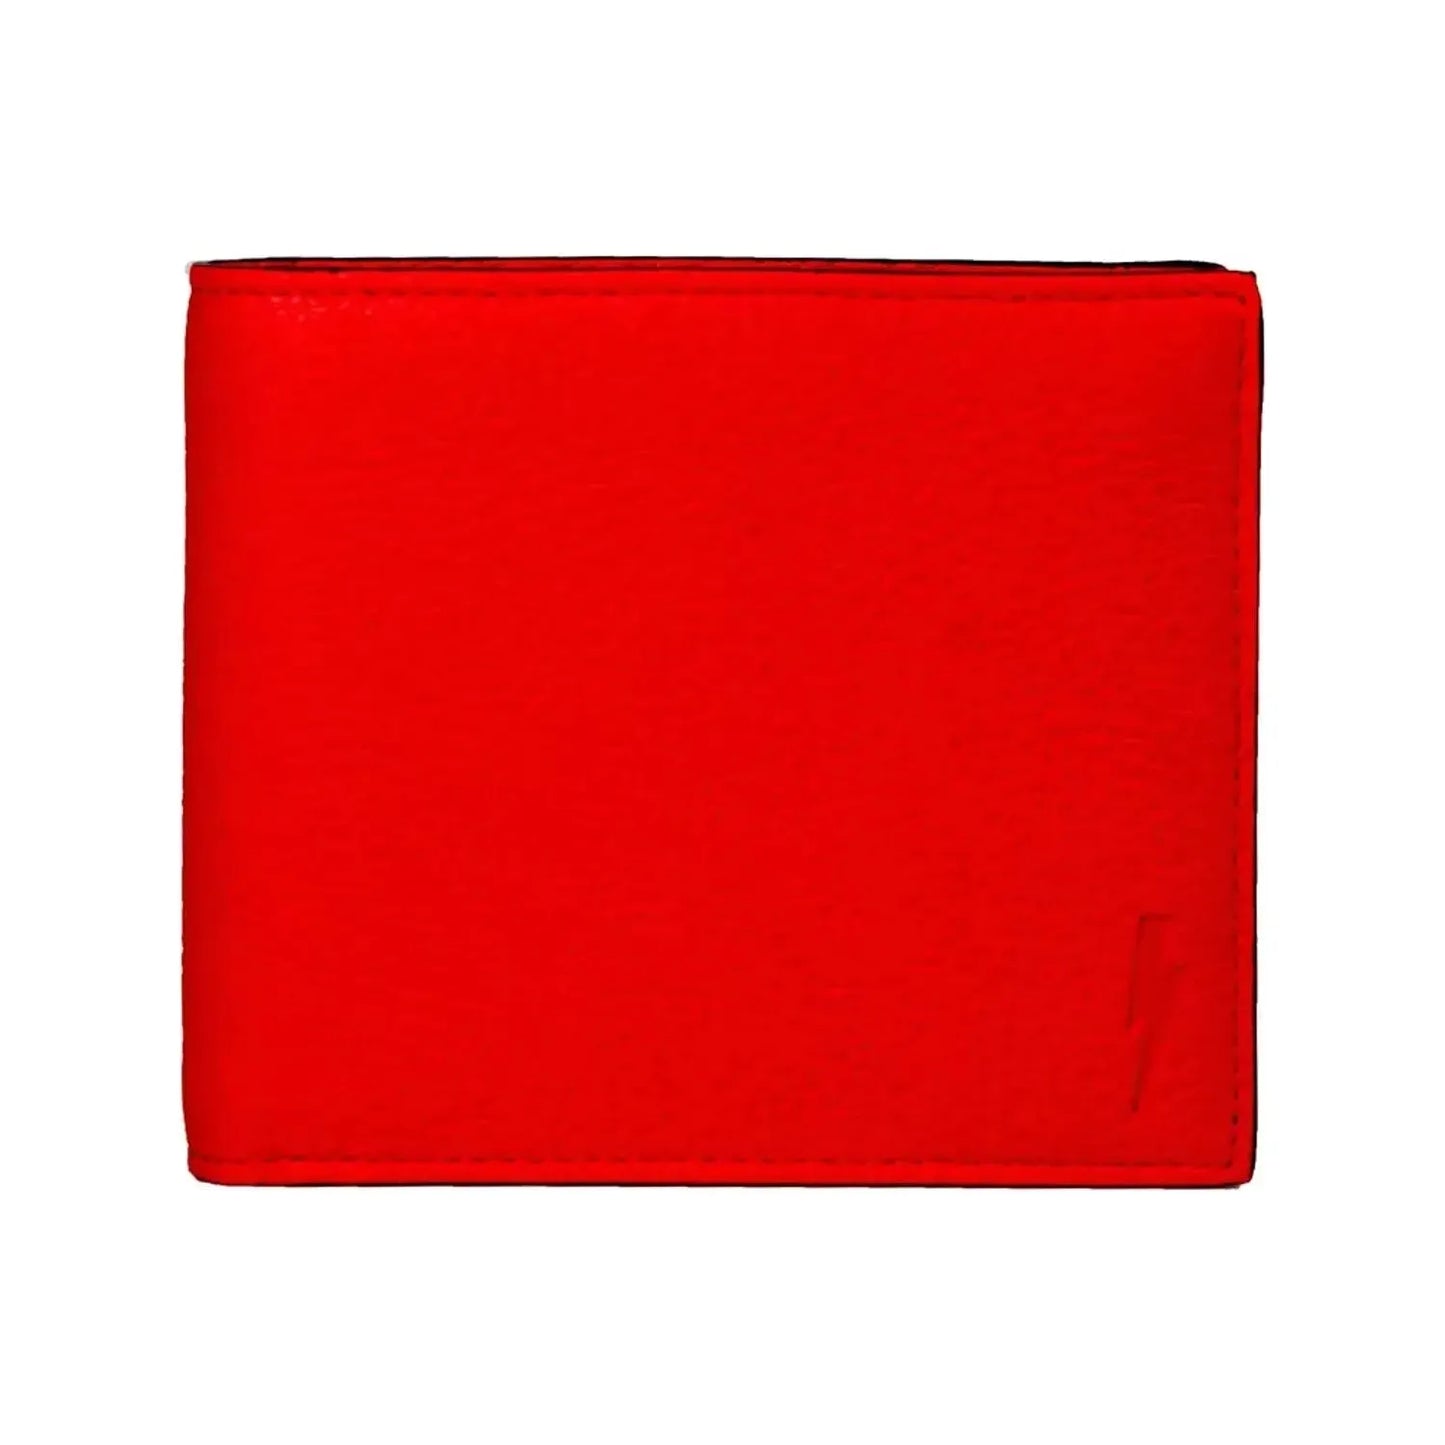 Neil Barrett Sleek Red Leather Men's Wallet red-wallet